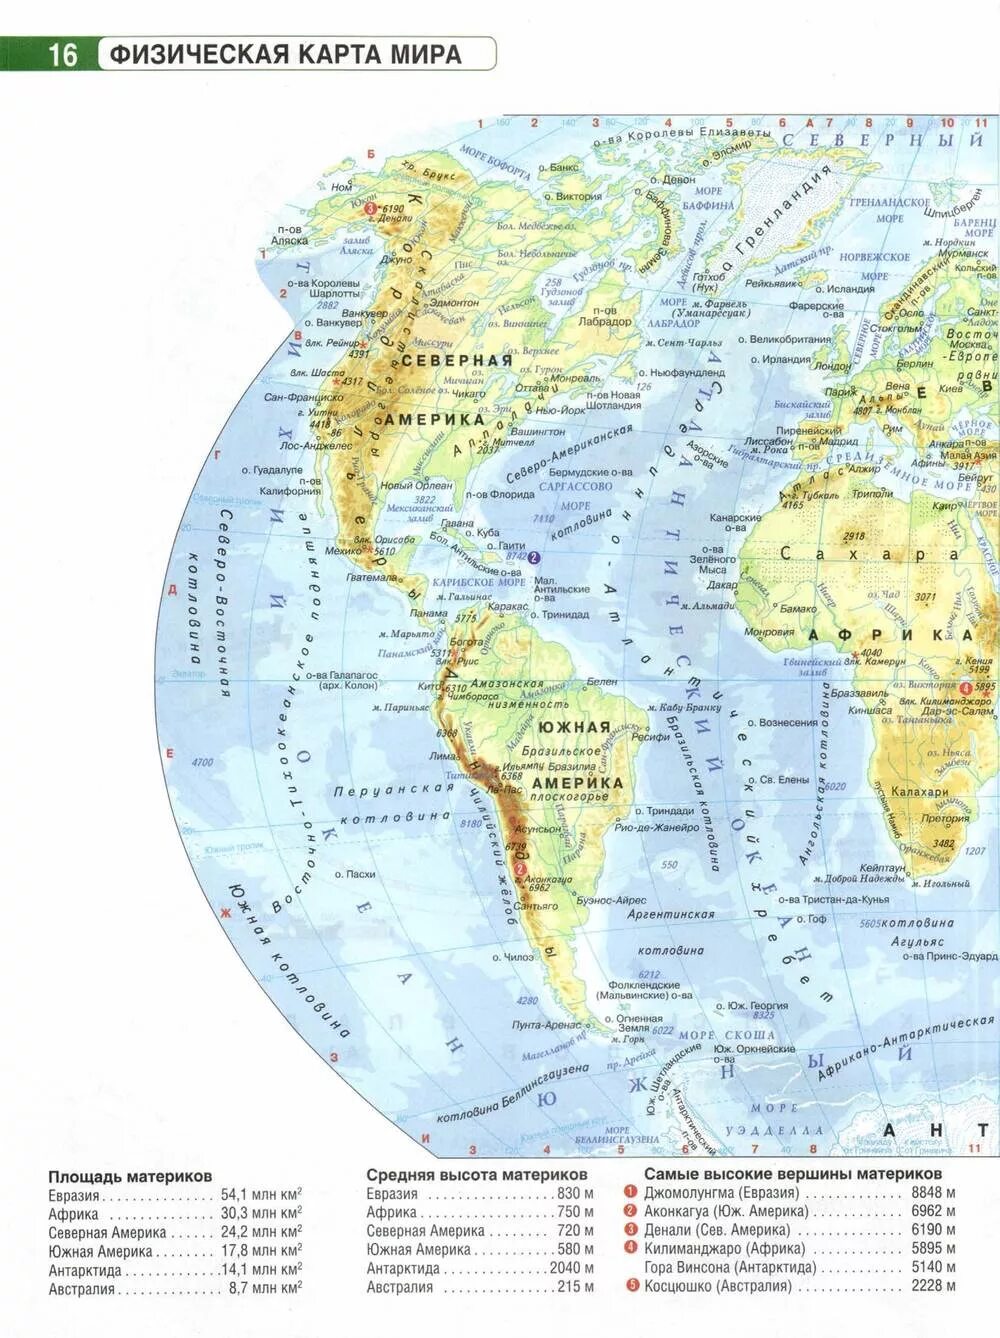 Высокие вершины на карте. Самые высокие вершины материков на карте. Самые высокие вершины материков на карте мира. Самые высокие вершины на каждом материке на карте мира. Пять высочайших вершин материков на карте.